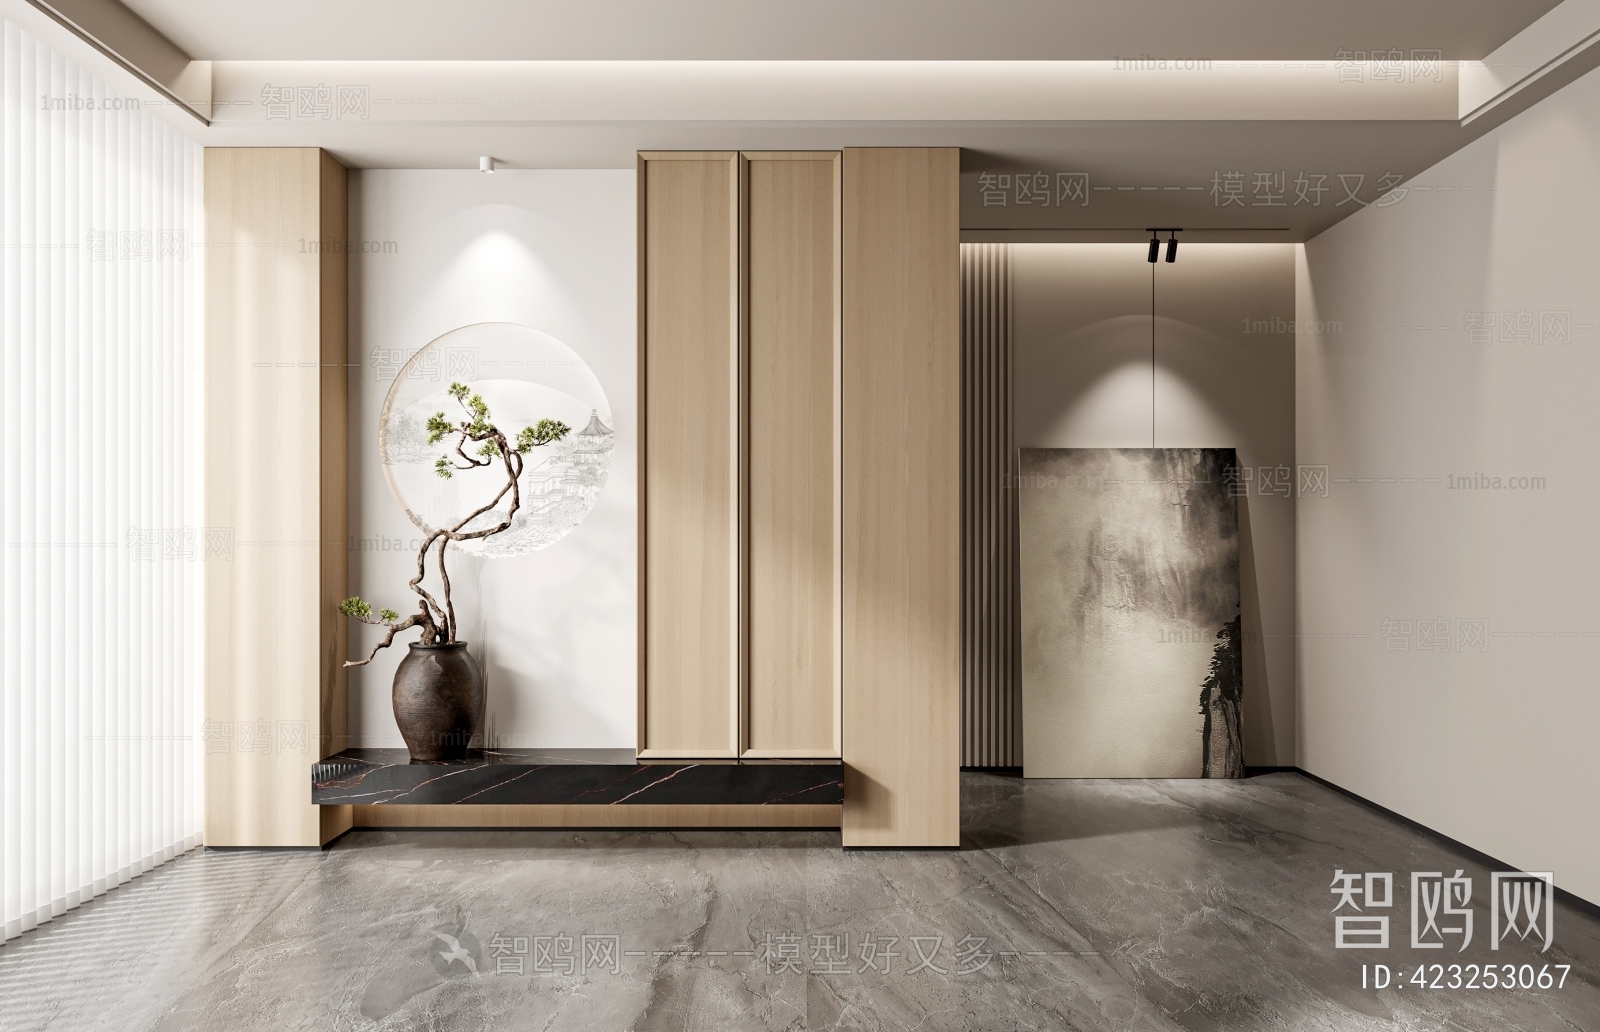 New Chinese Style Wabi-sabi Style Hallway